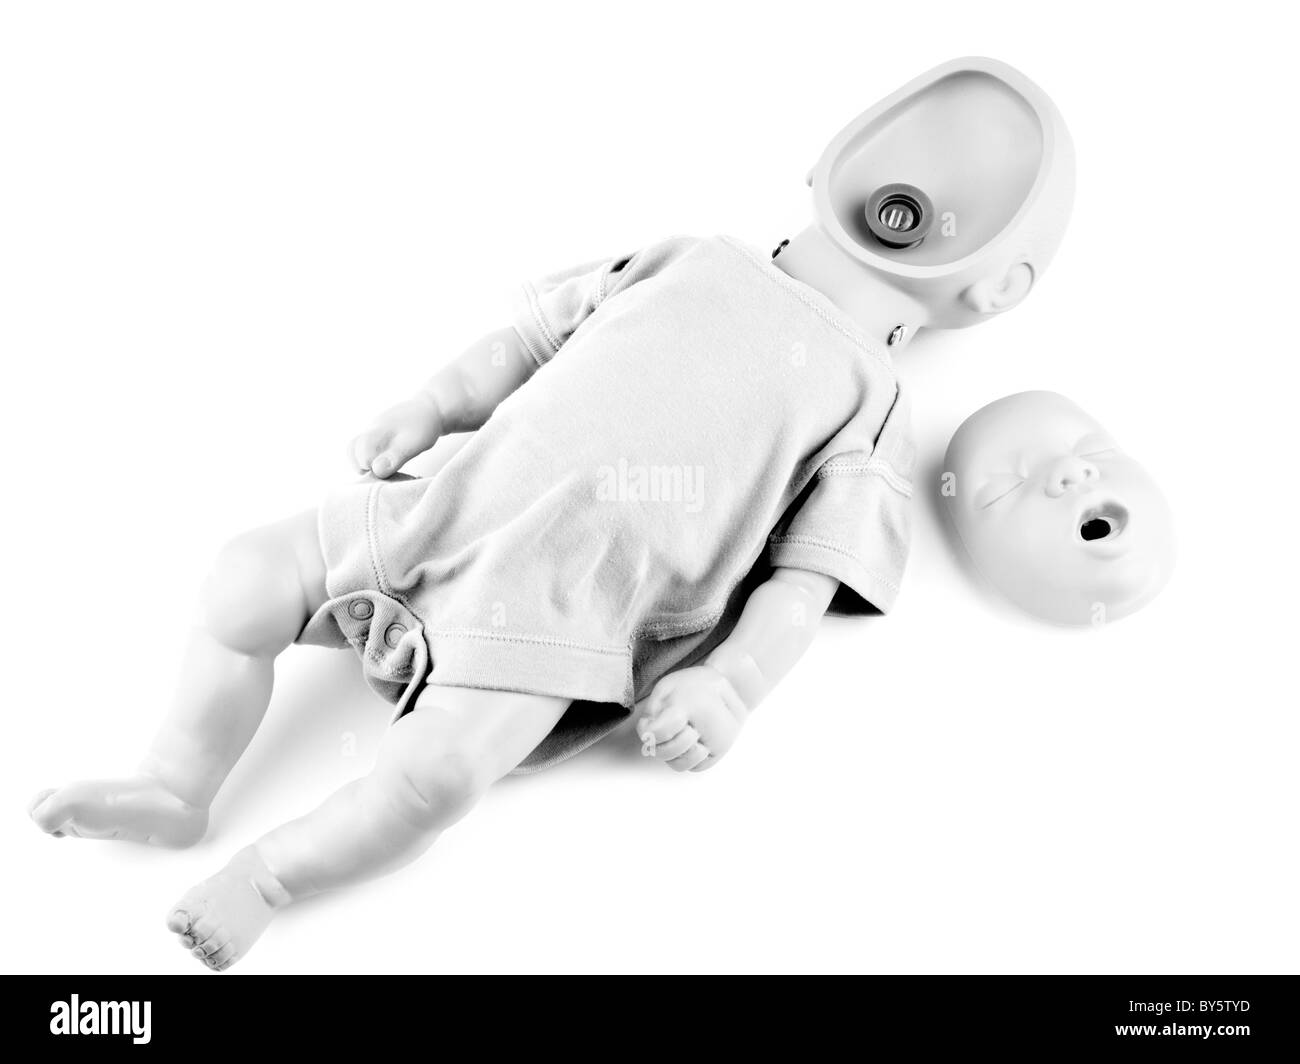 Schwarz / weiß Bild von erste-Hilfe-Traning Säugling dummy auf weißem Hintergrund Stockfoto